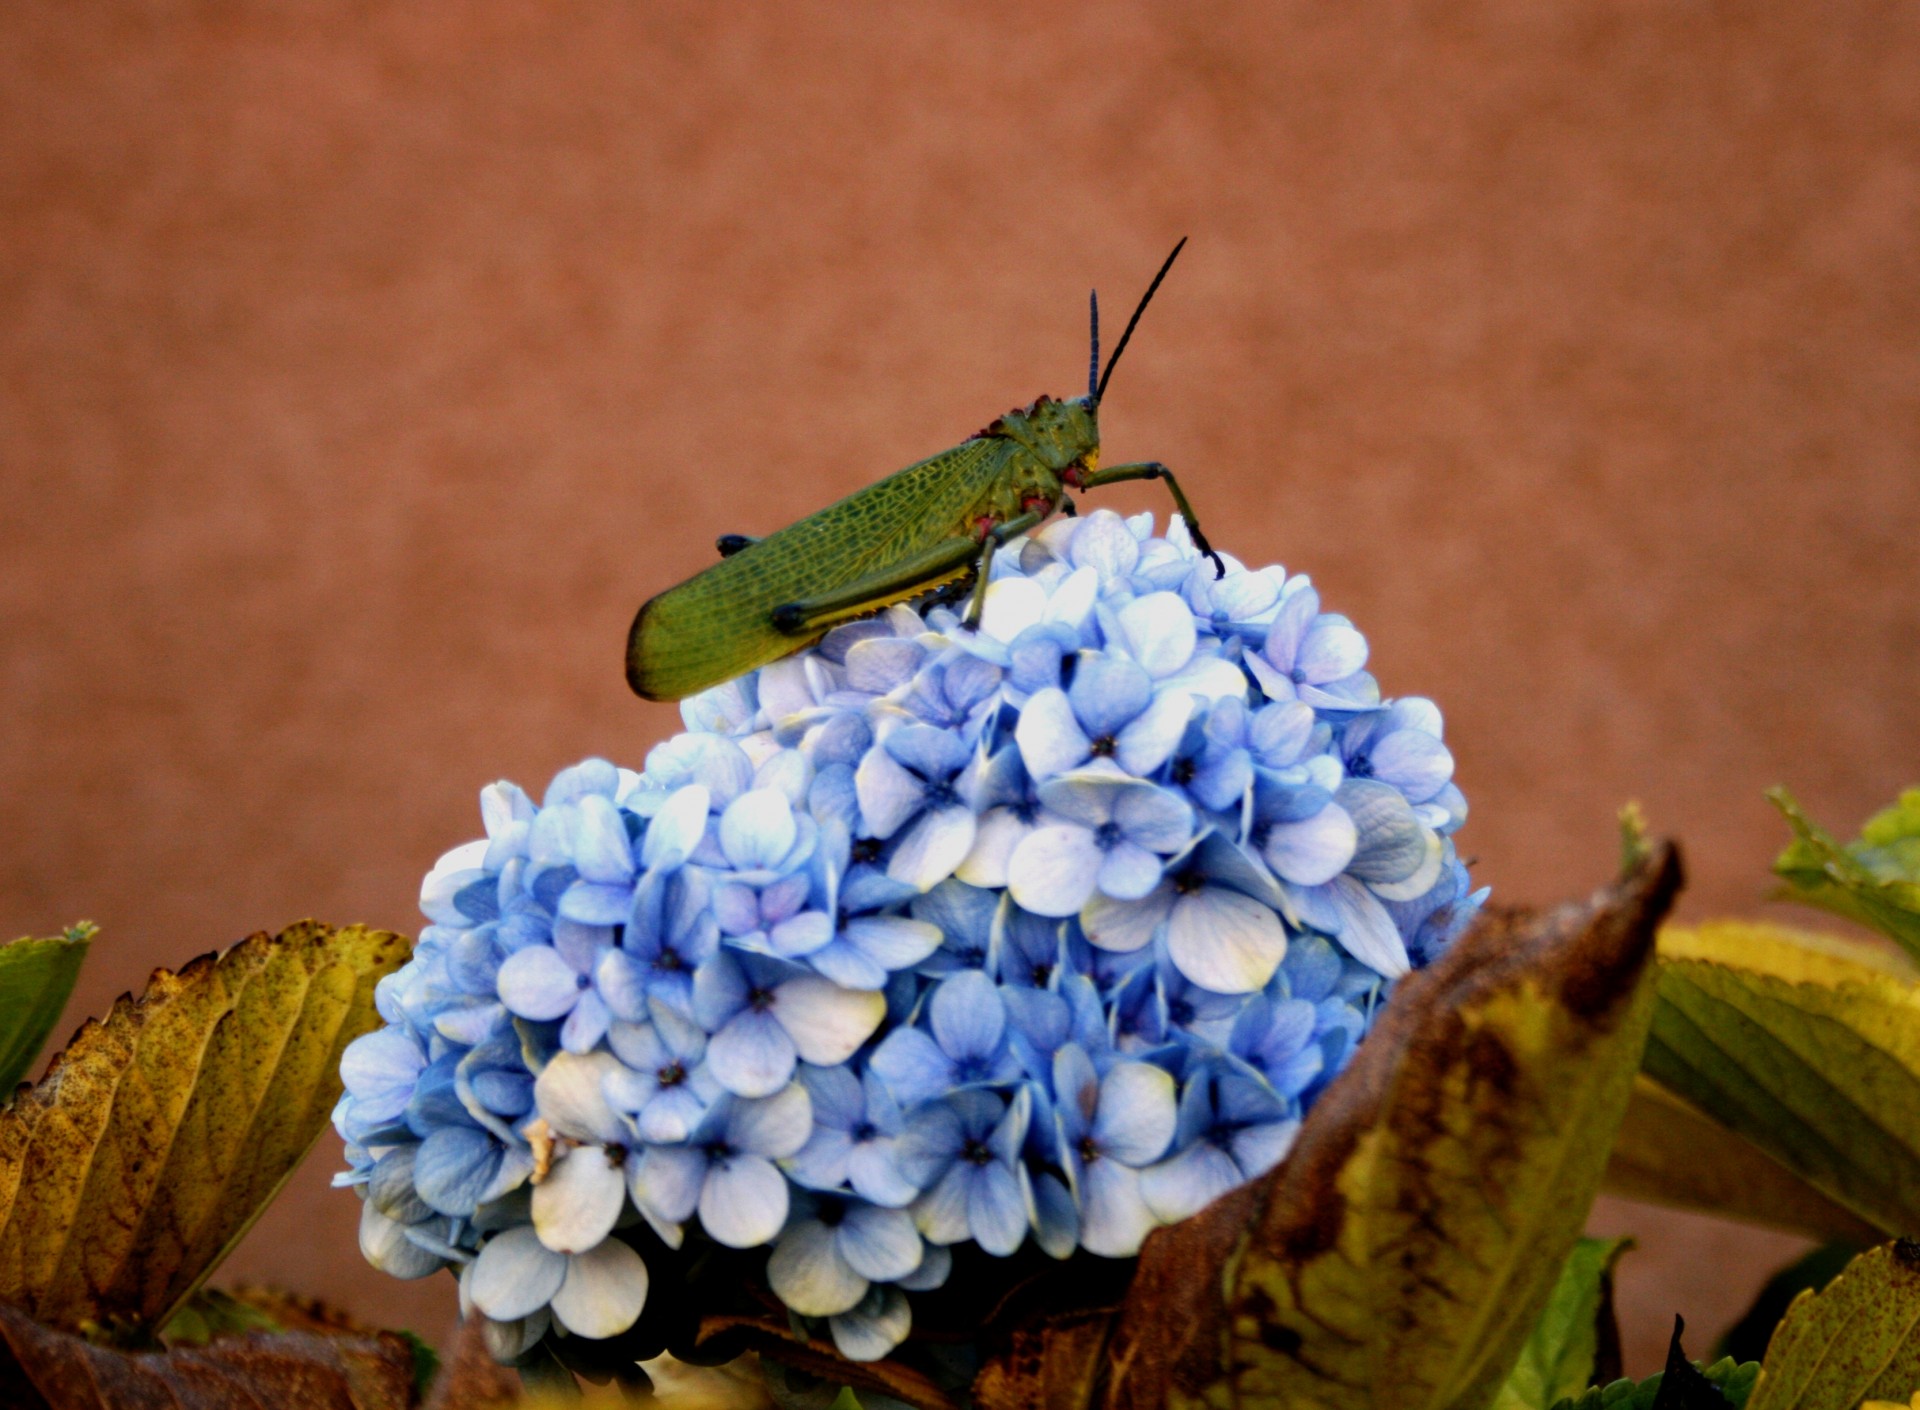 Grasshopper On Blue Flower